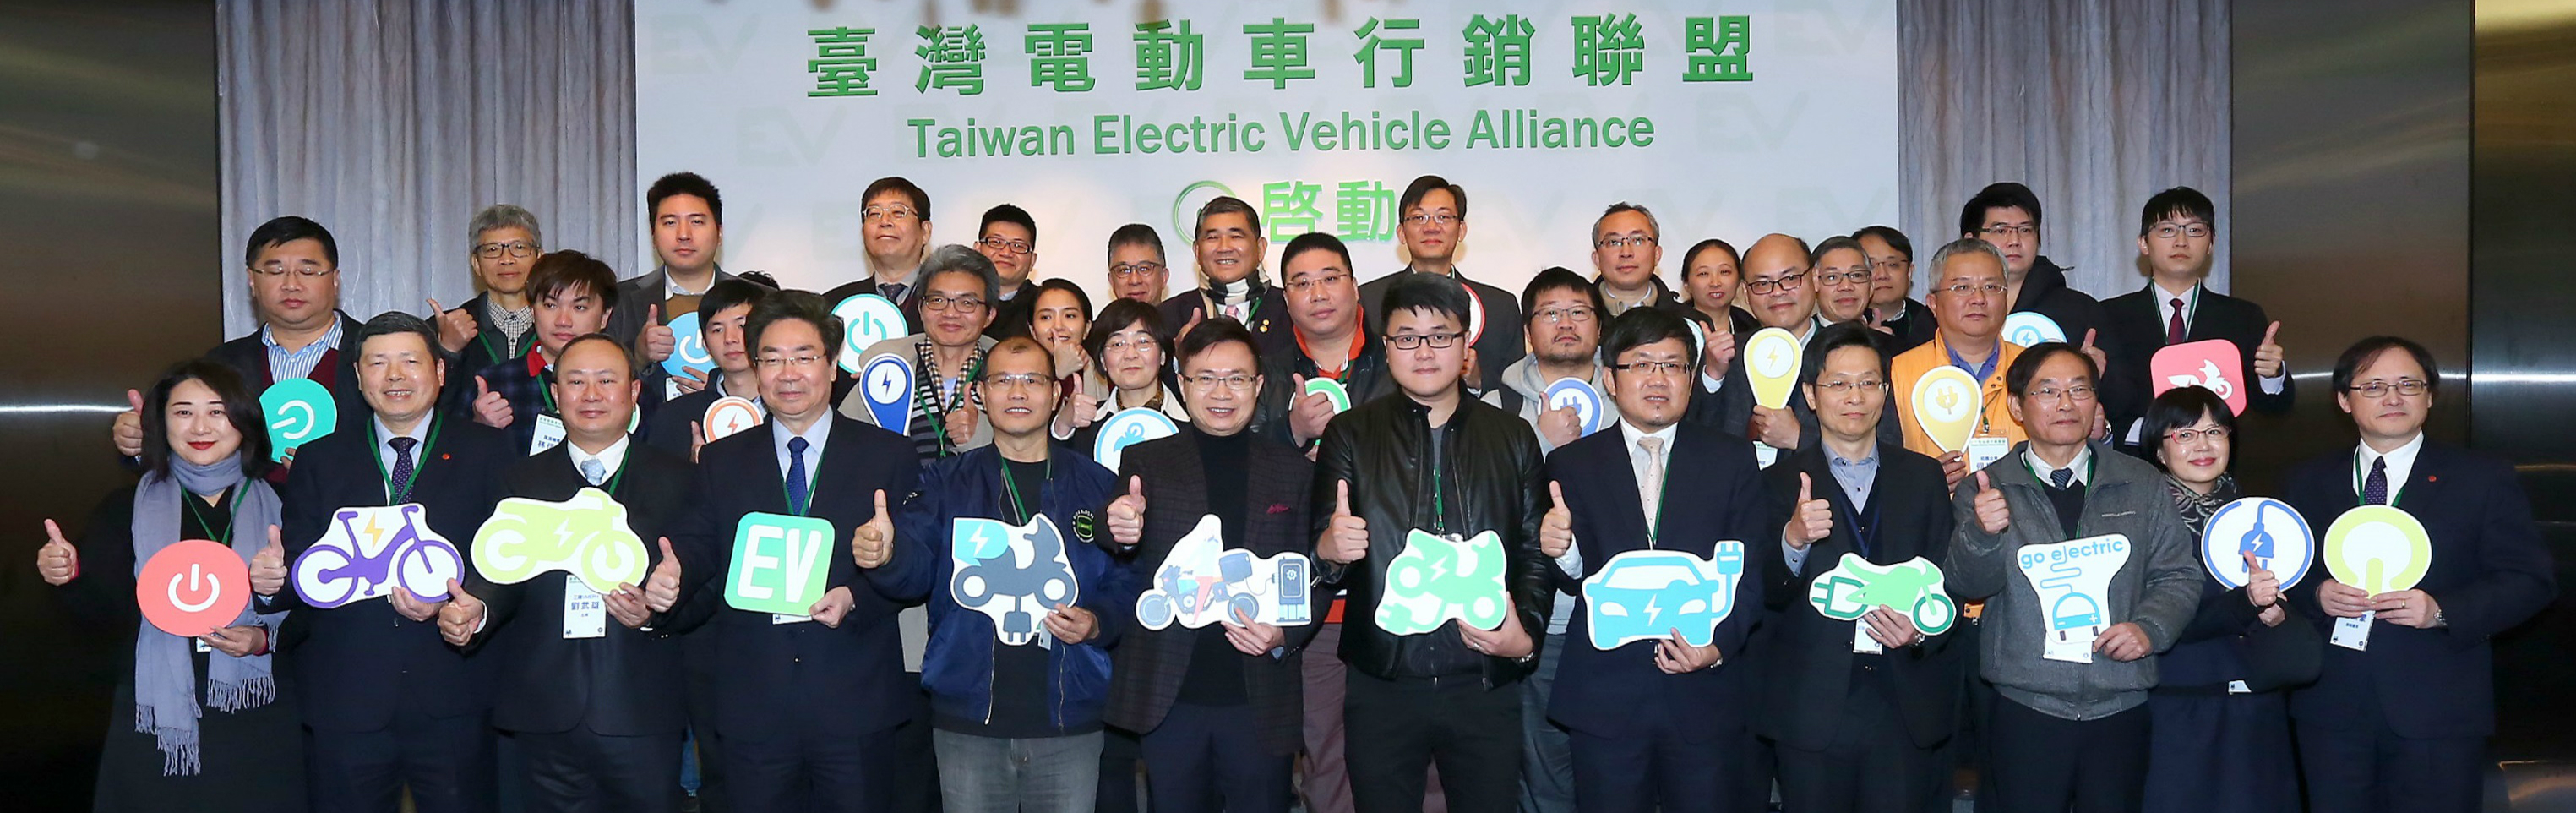 20180206臺灣電動車行銷聯盟成立大會